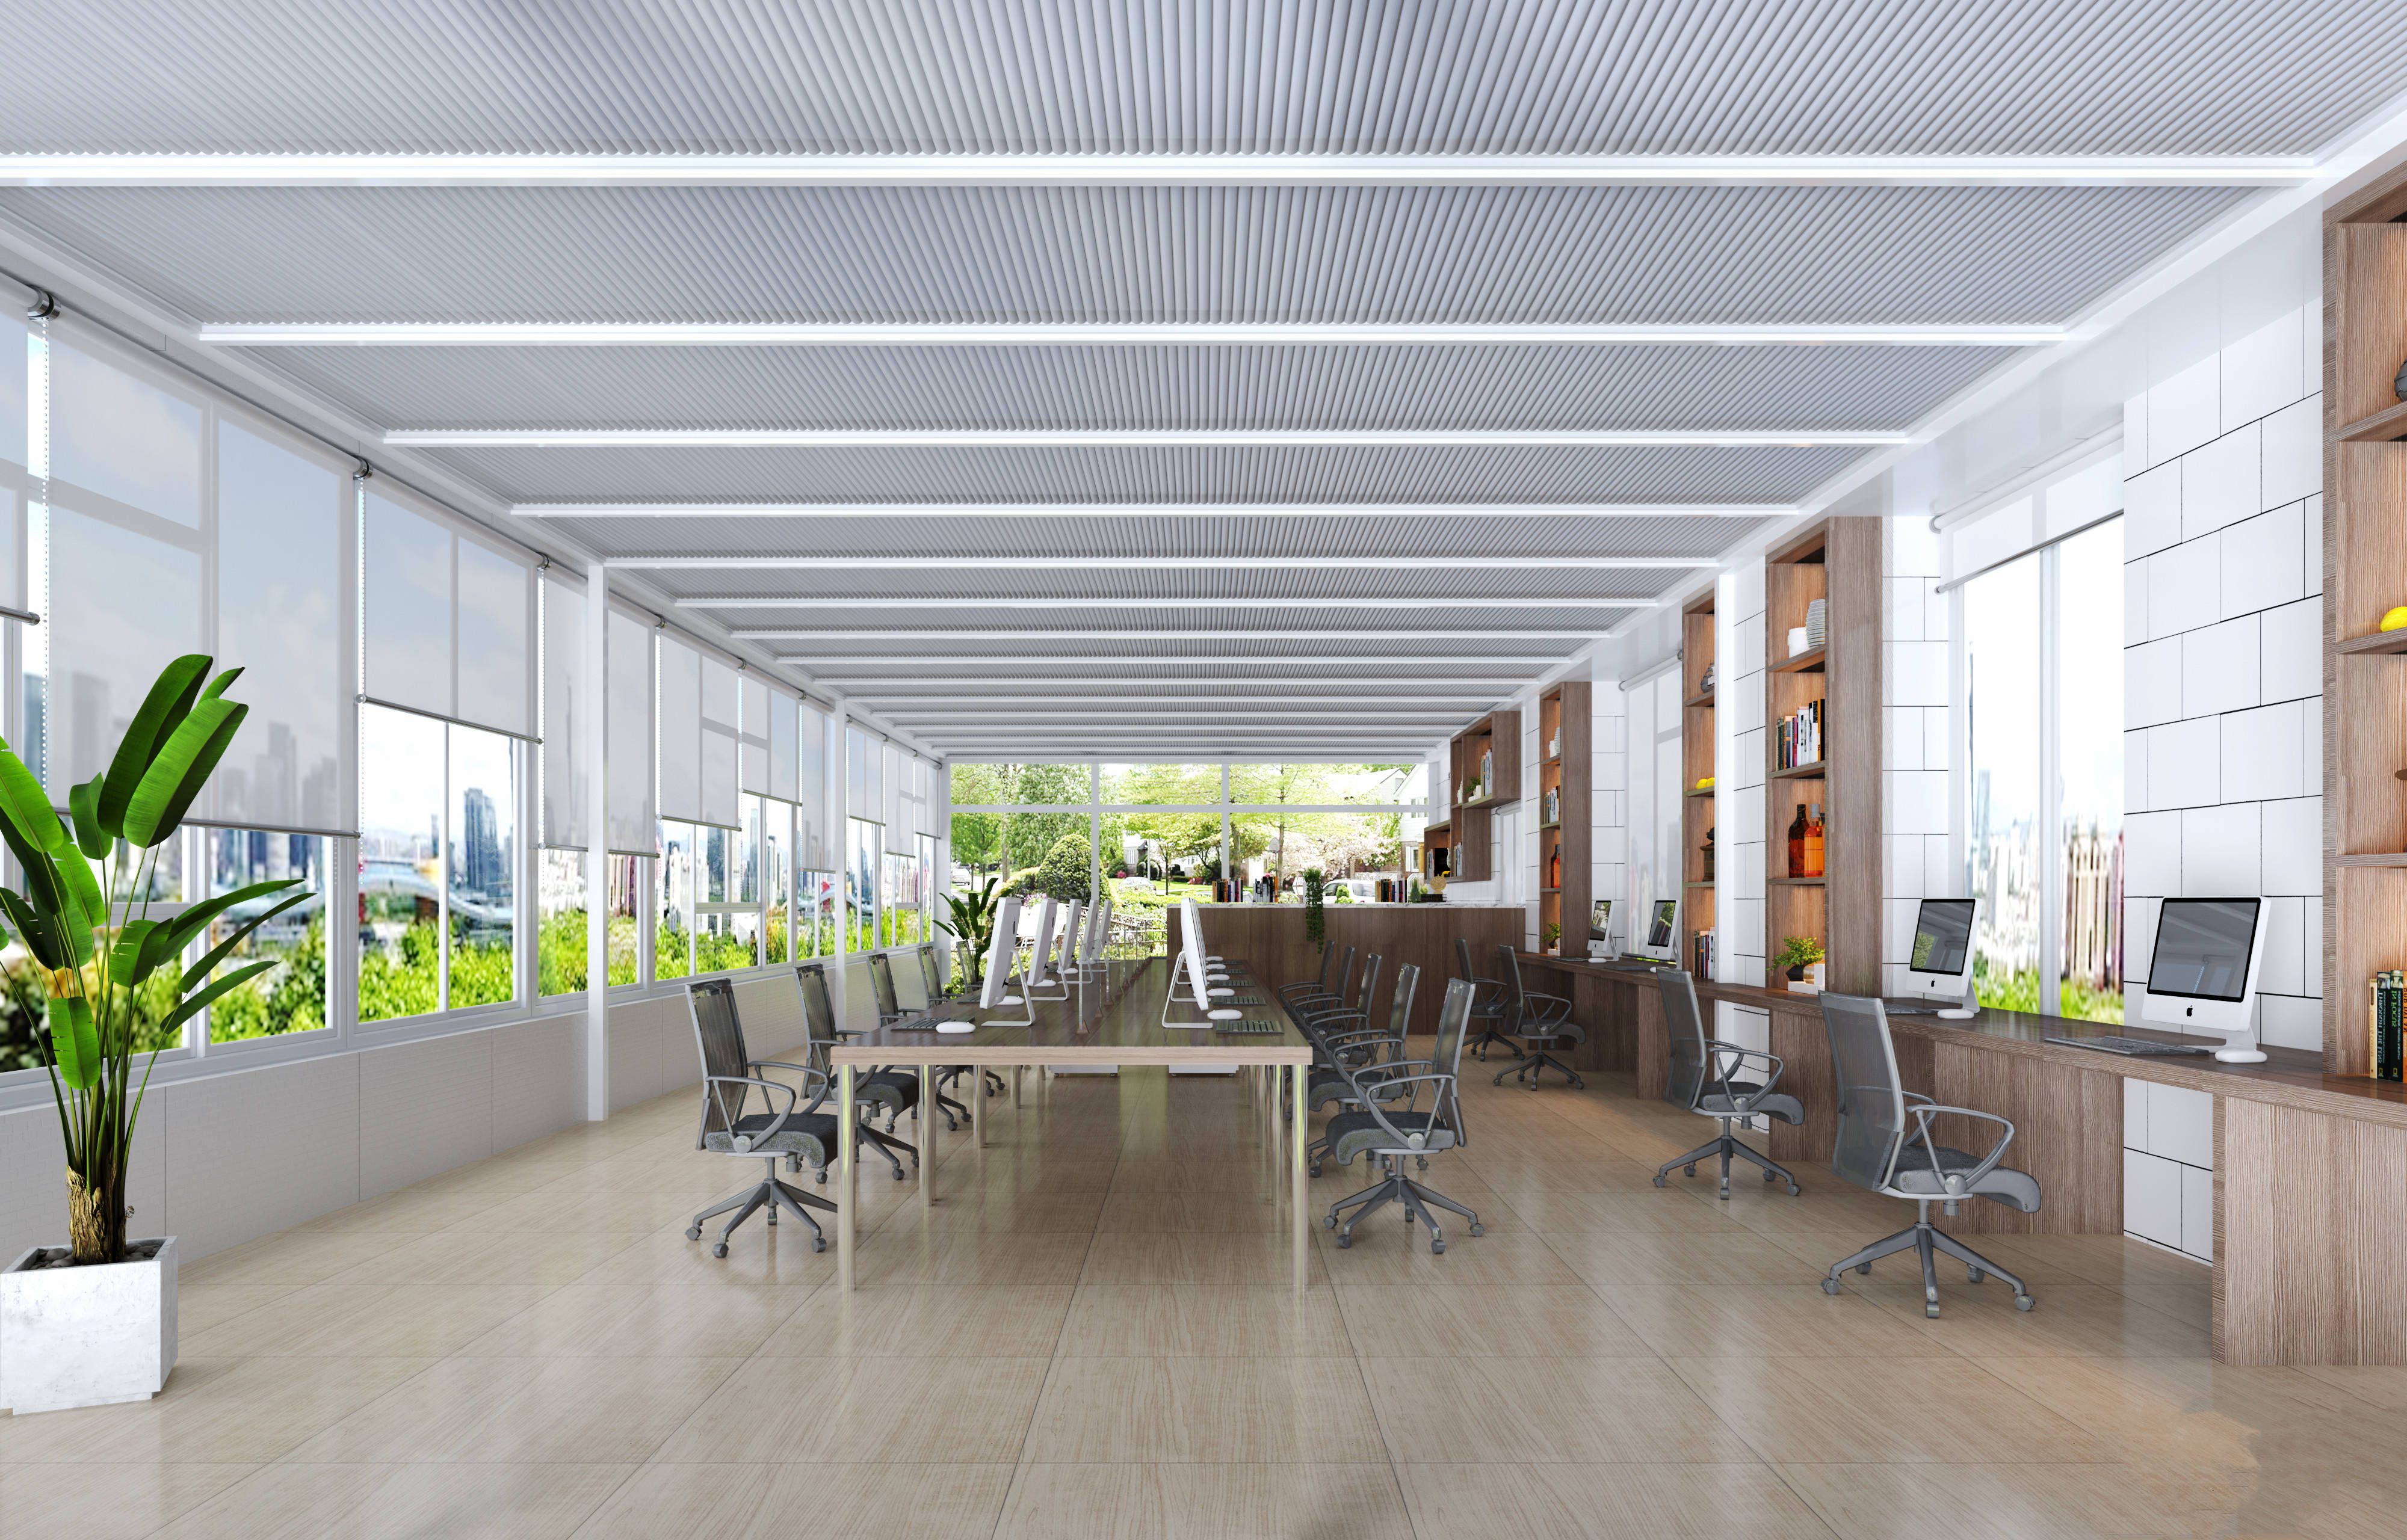 办公室装修分享:舒适明亮的开放式设计,打造团队合作新氛围